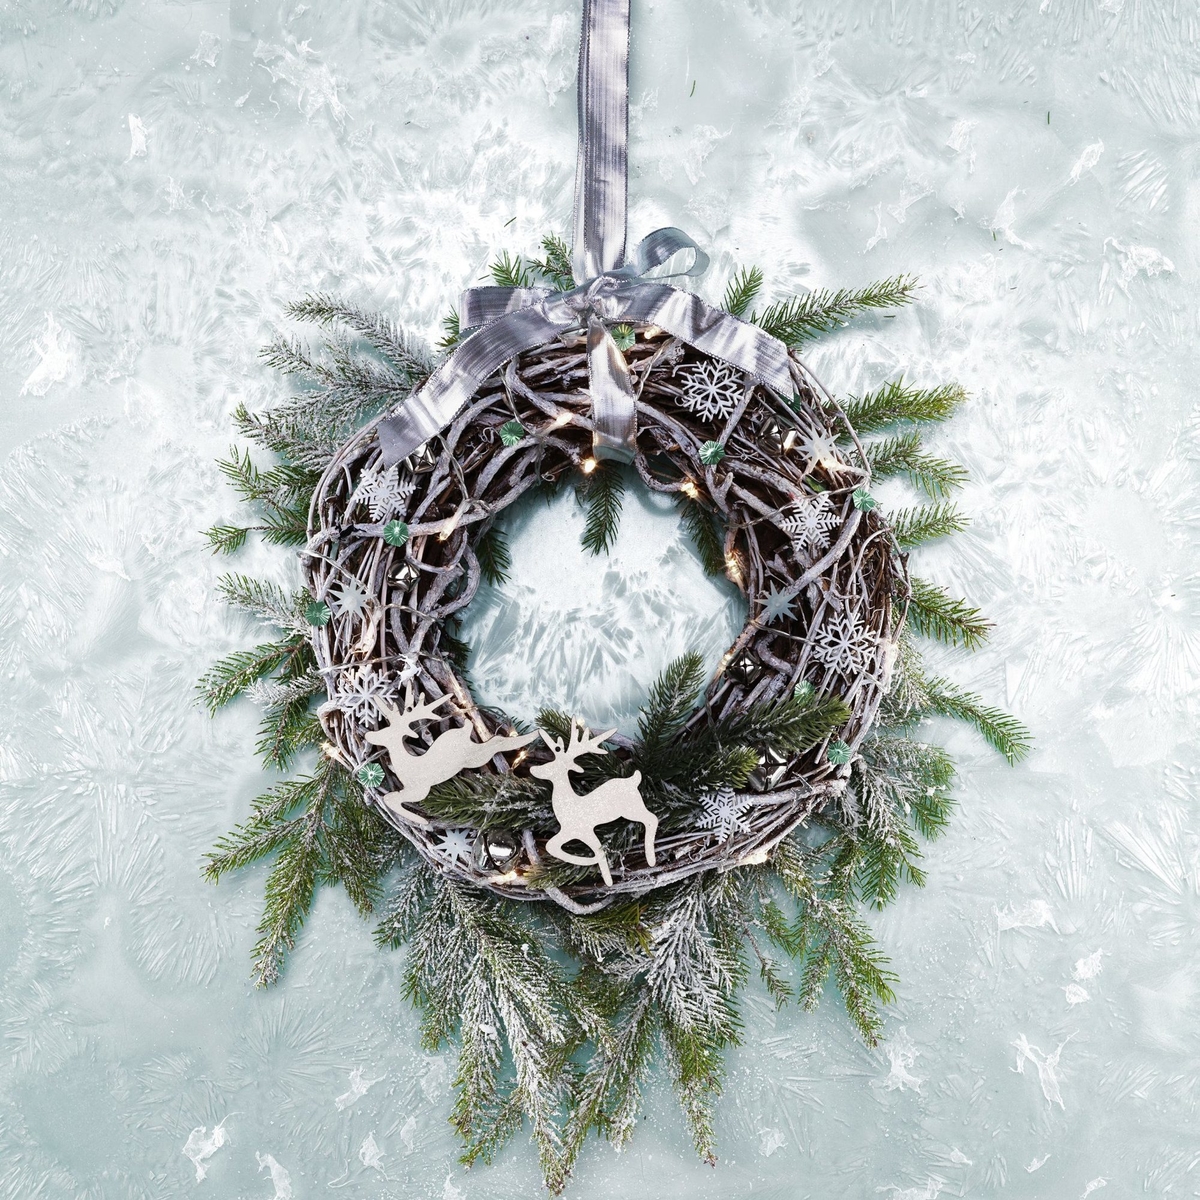 Frosty wreath